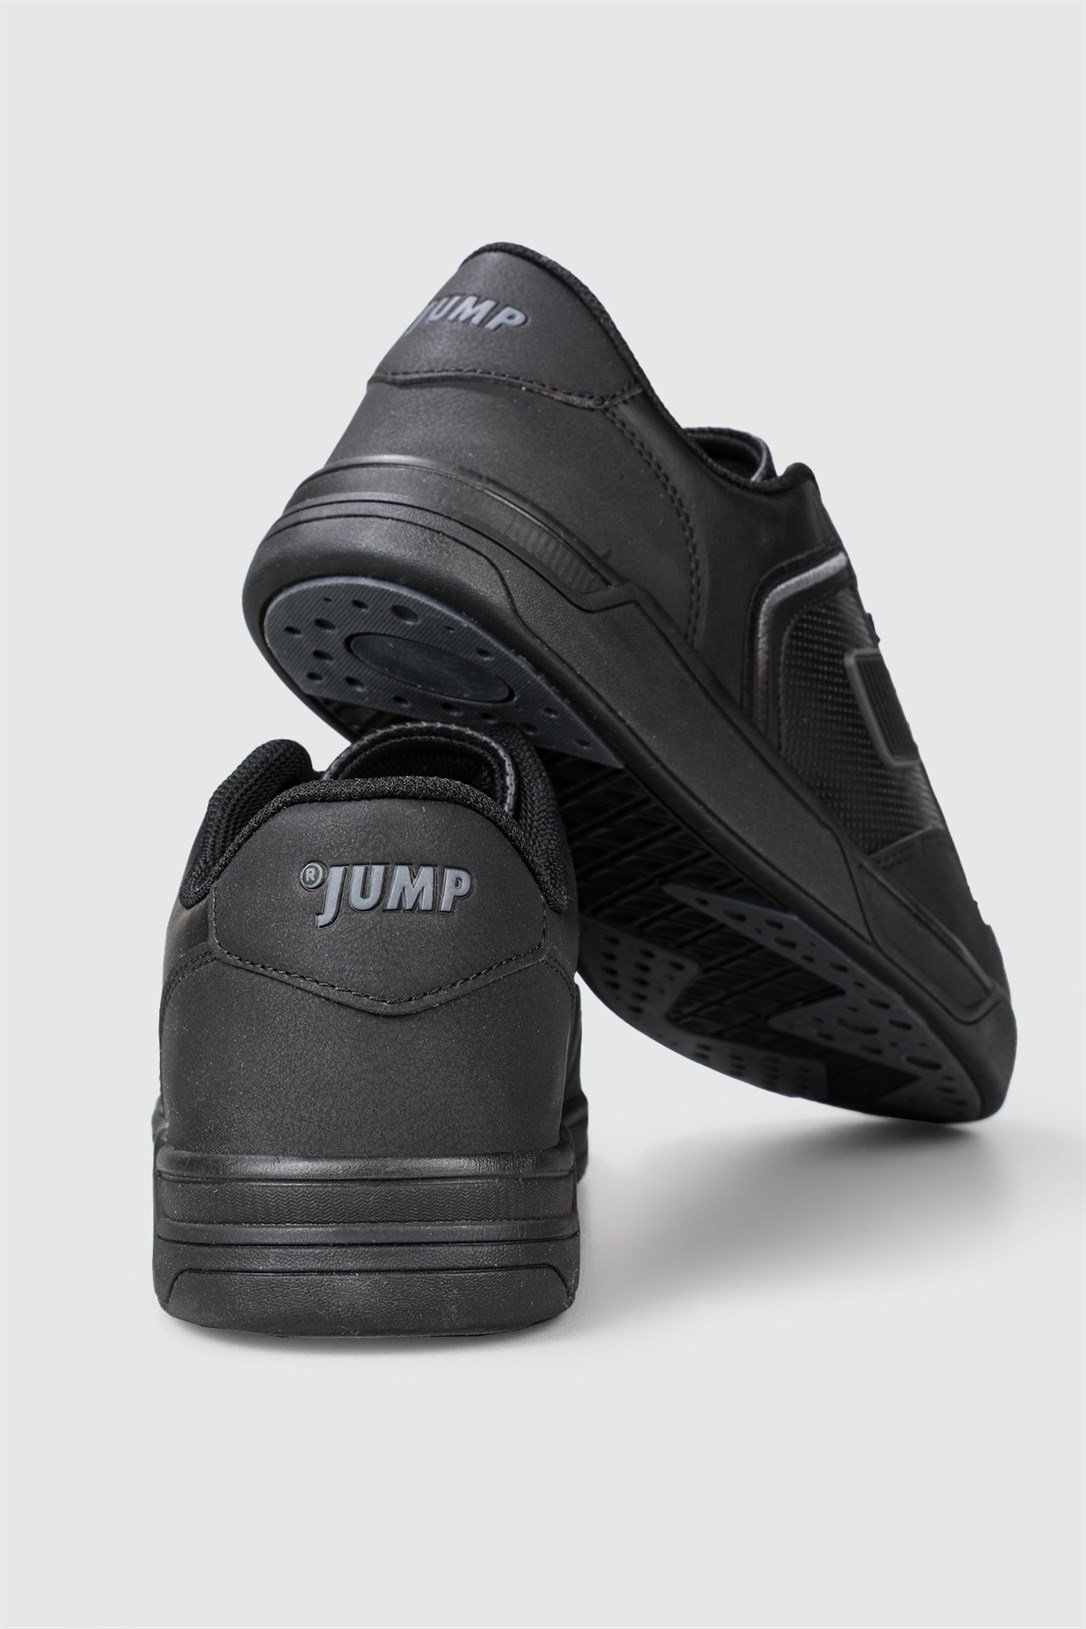 Jump Günlük Rahat Sneaker Siyah Erkek Spor Ayakkabı 27799 | Ayakkabı City